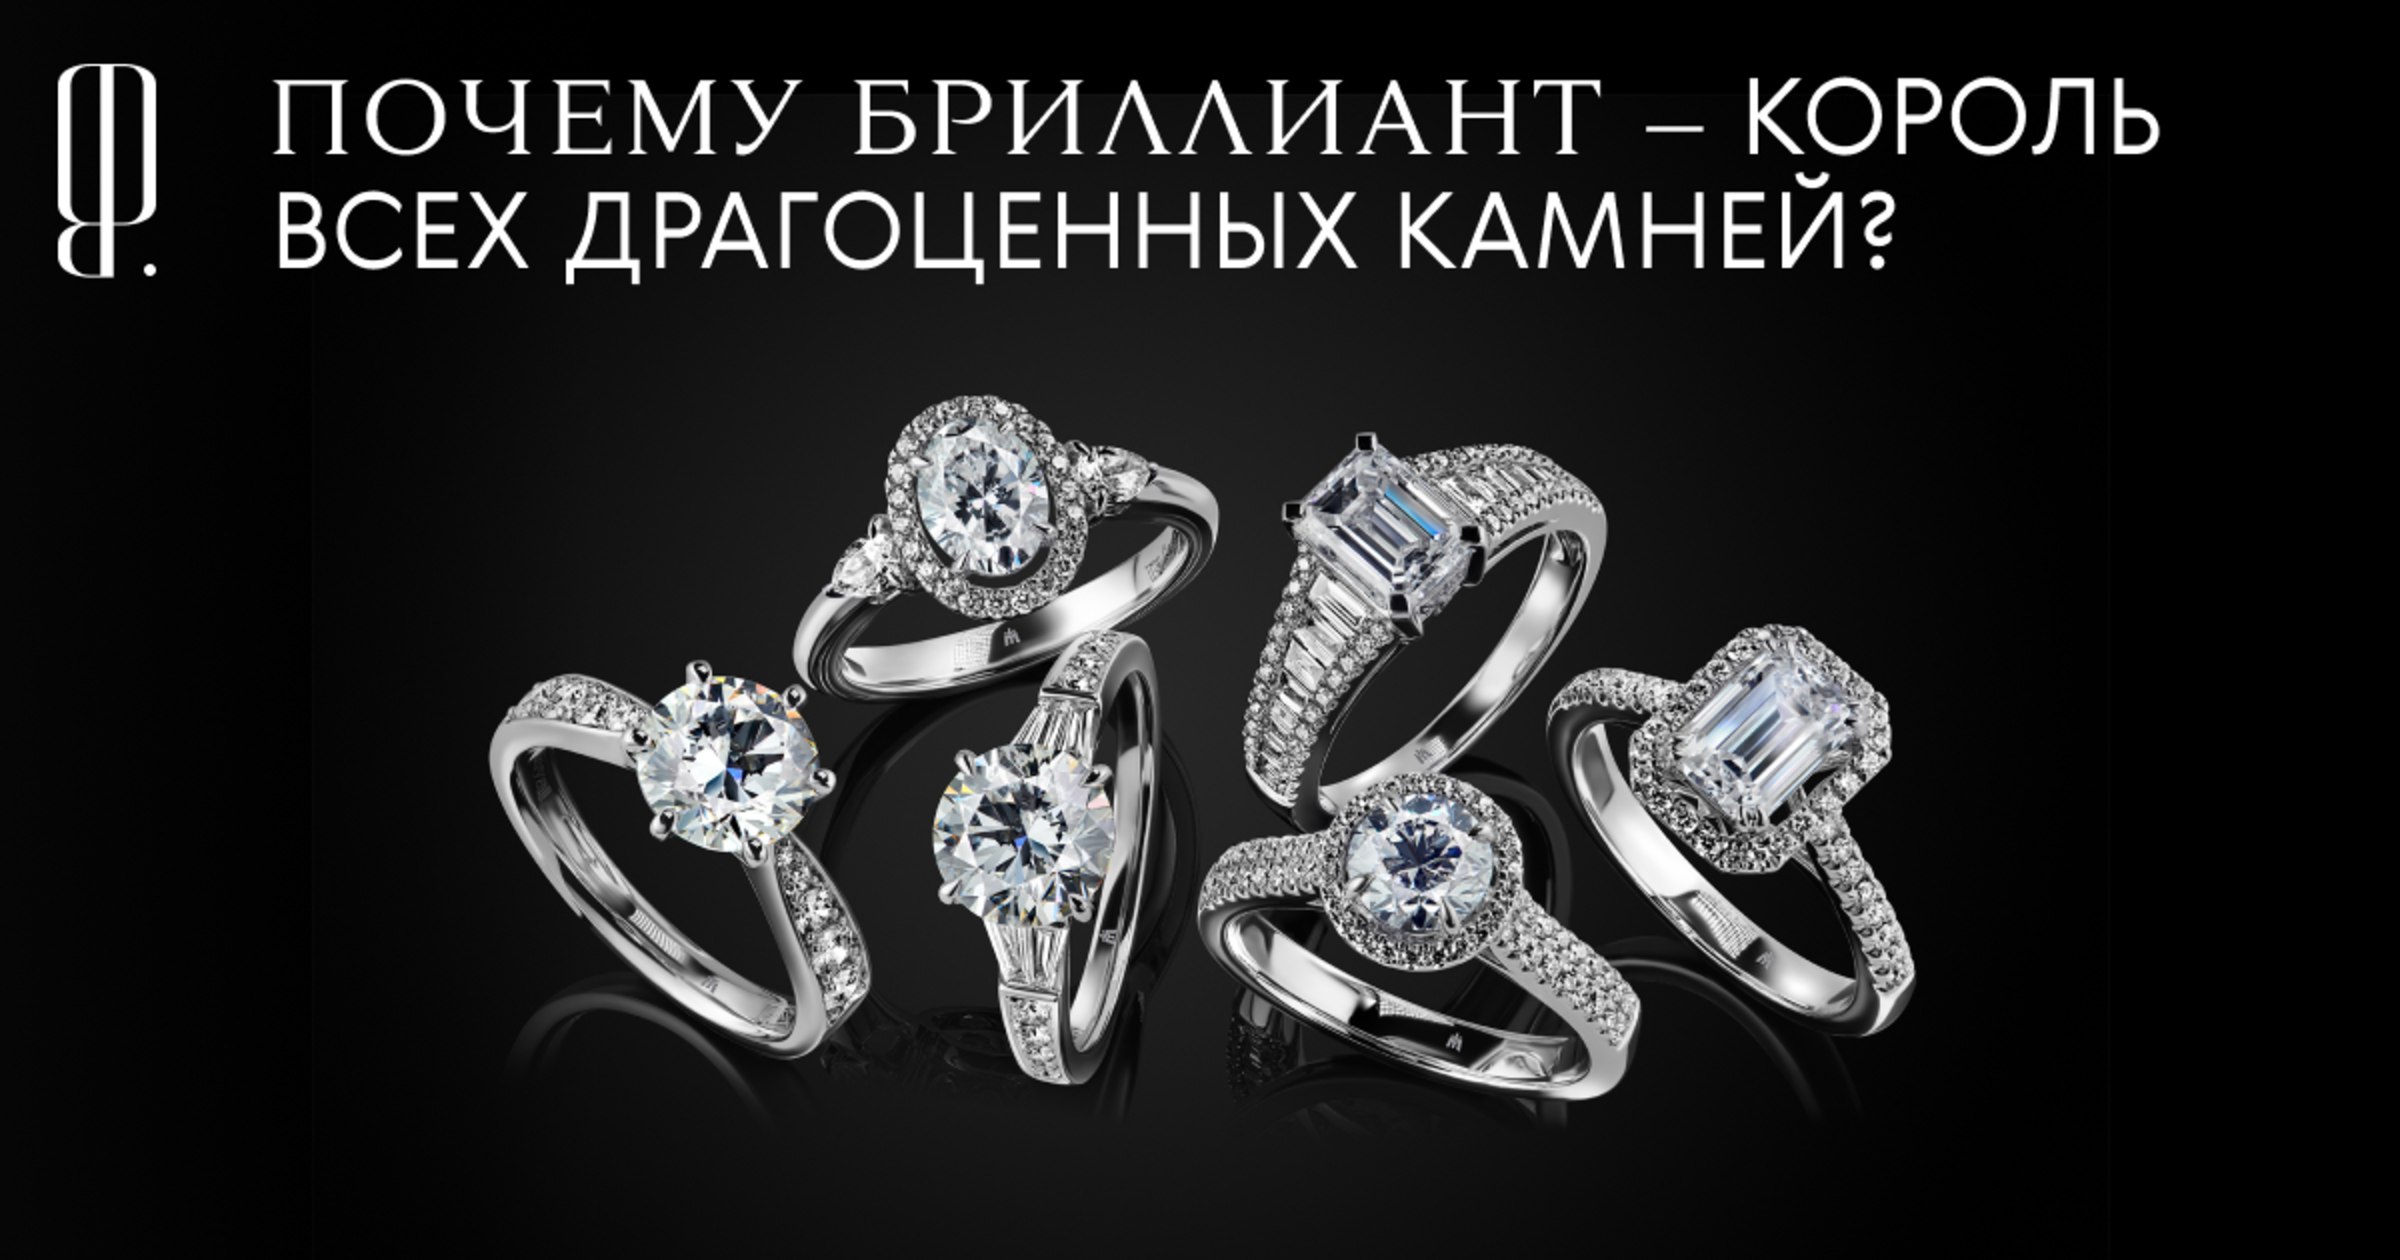 Московский ювелирный завод бриллианты